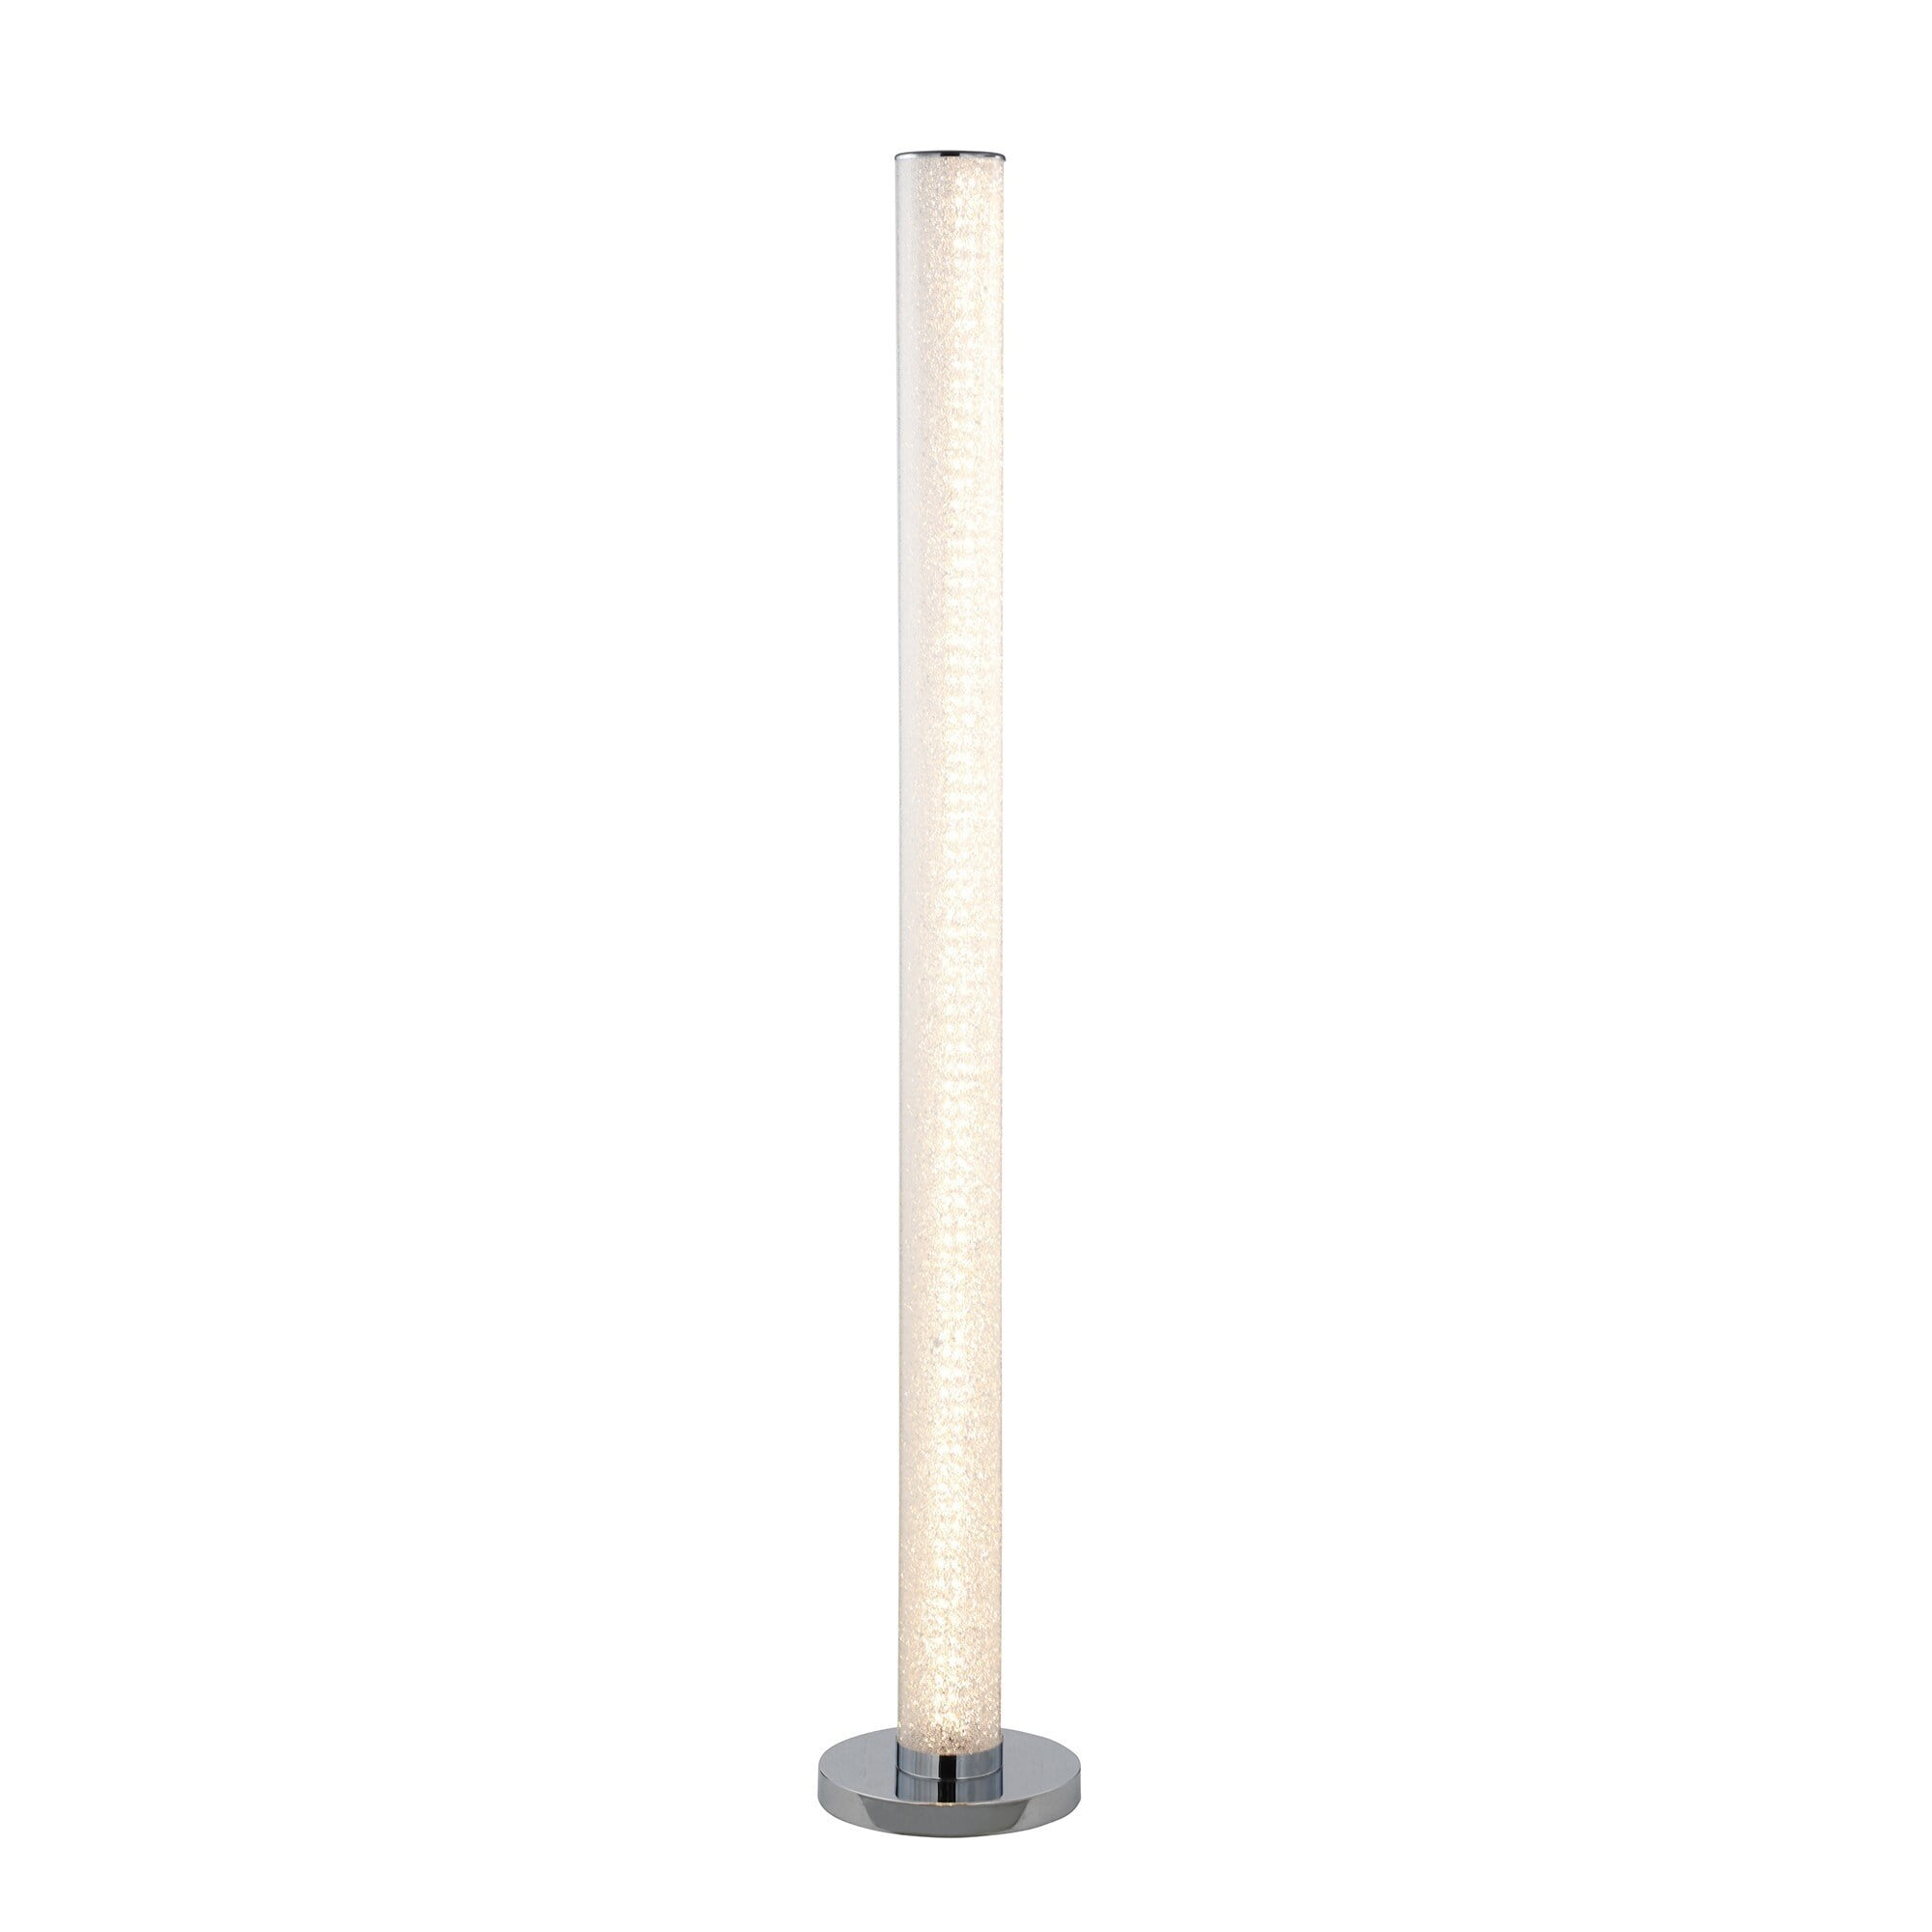 Benzara BM240869 Column Style Floor Lamp with Sandrock Acrylic Tube, Clear